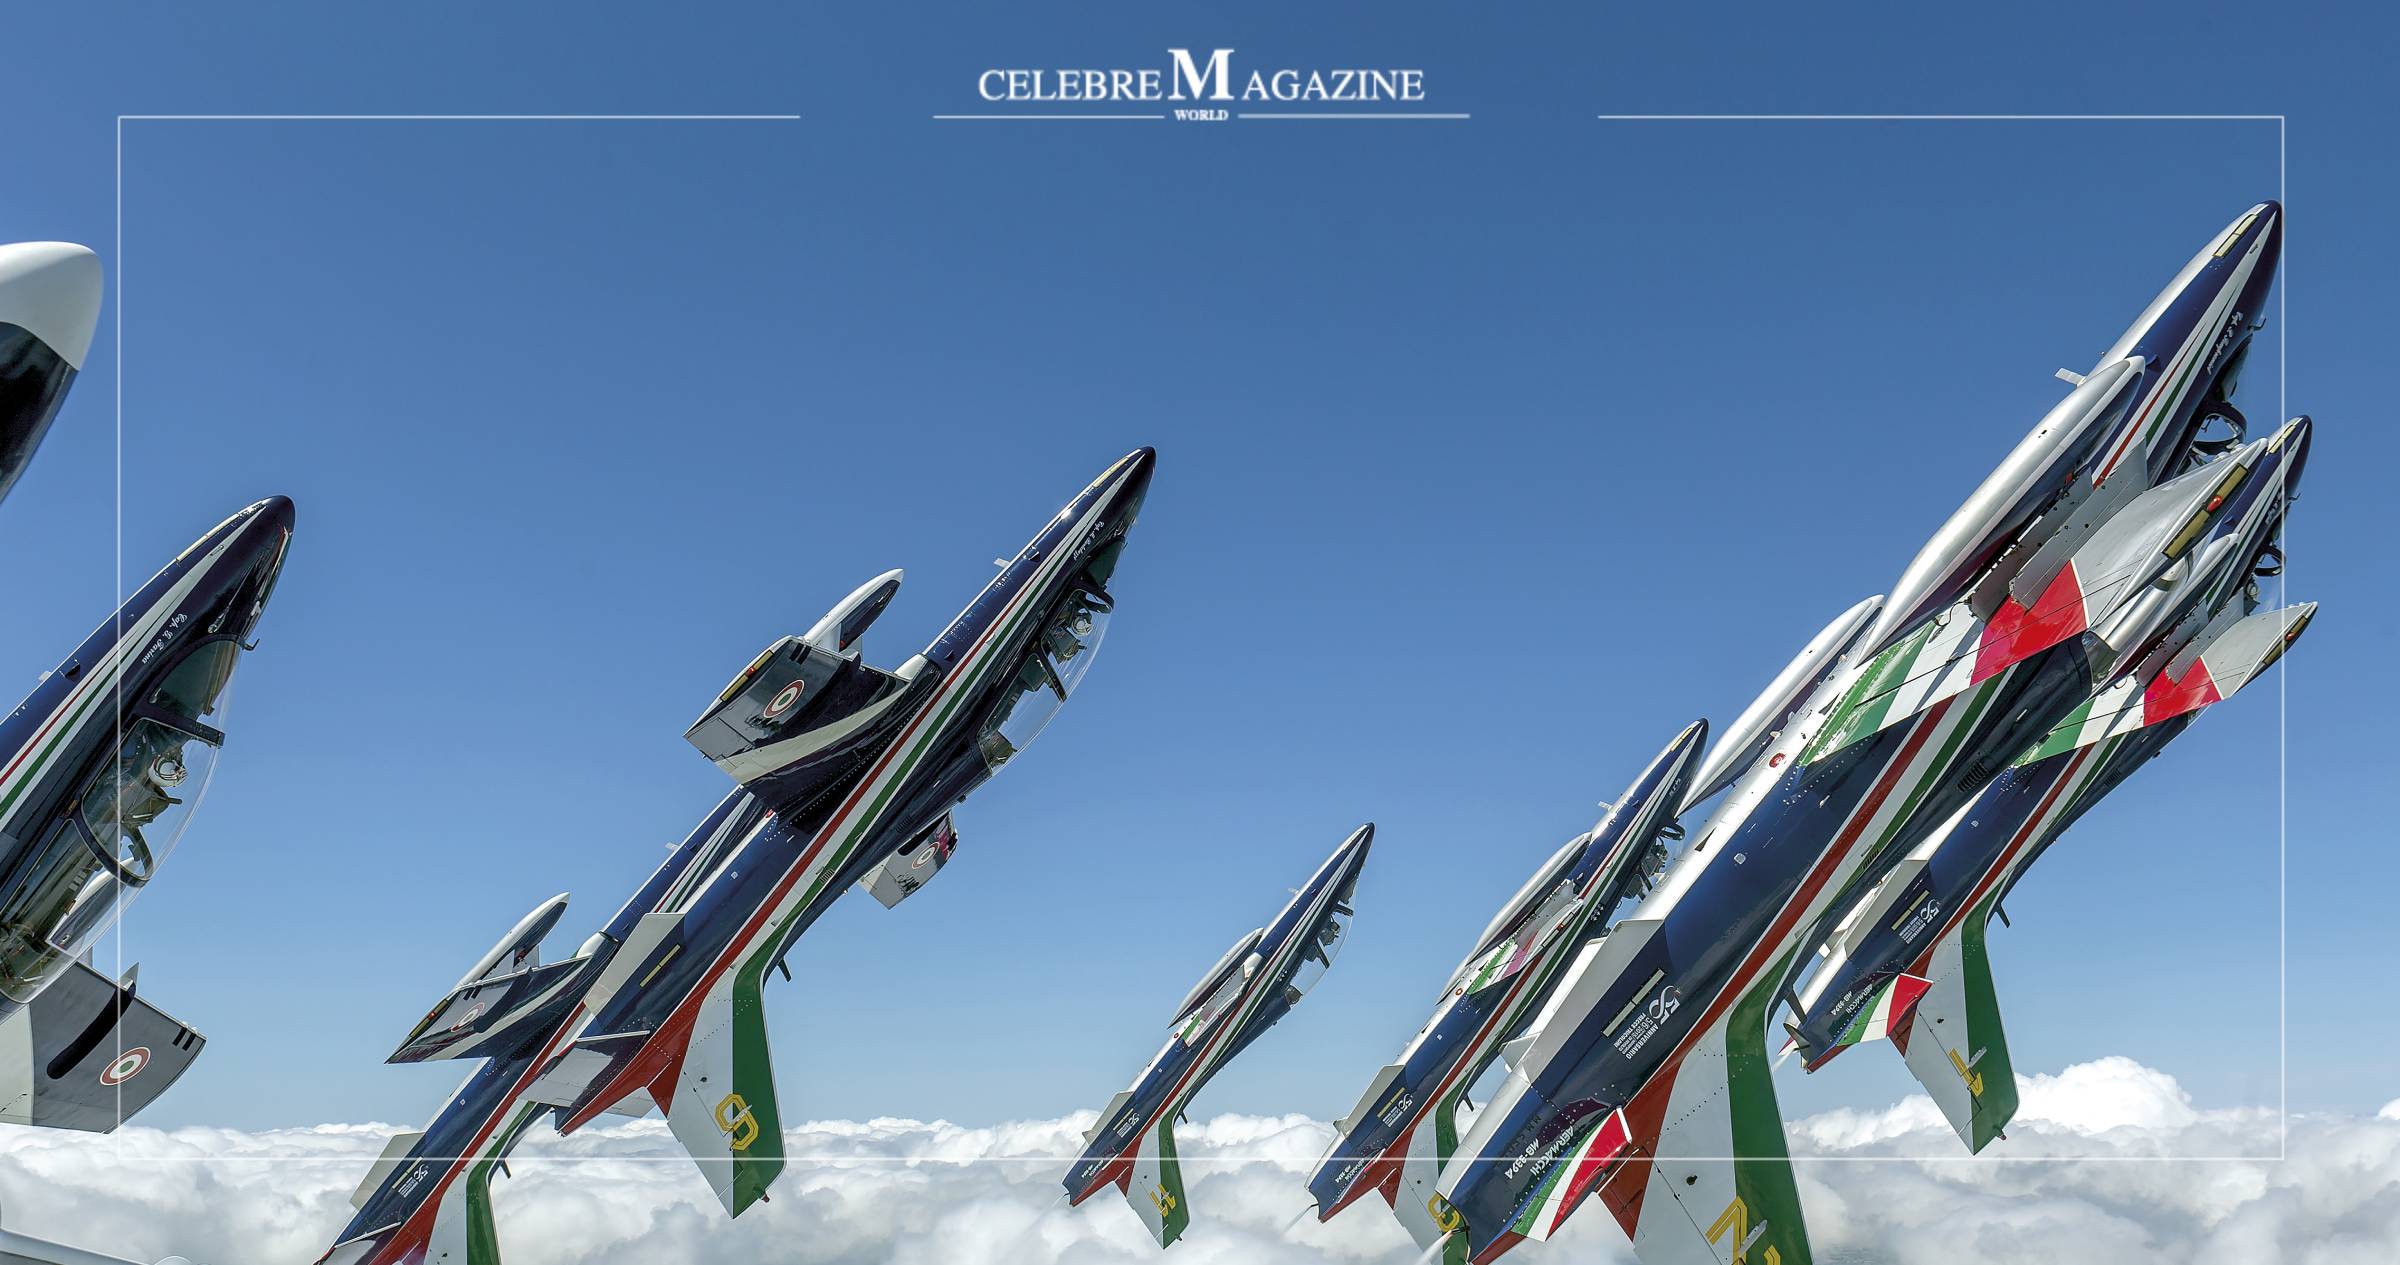 Frecce Tricolori: Flight high for over 60 years celebreMagazine